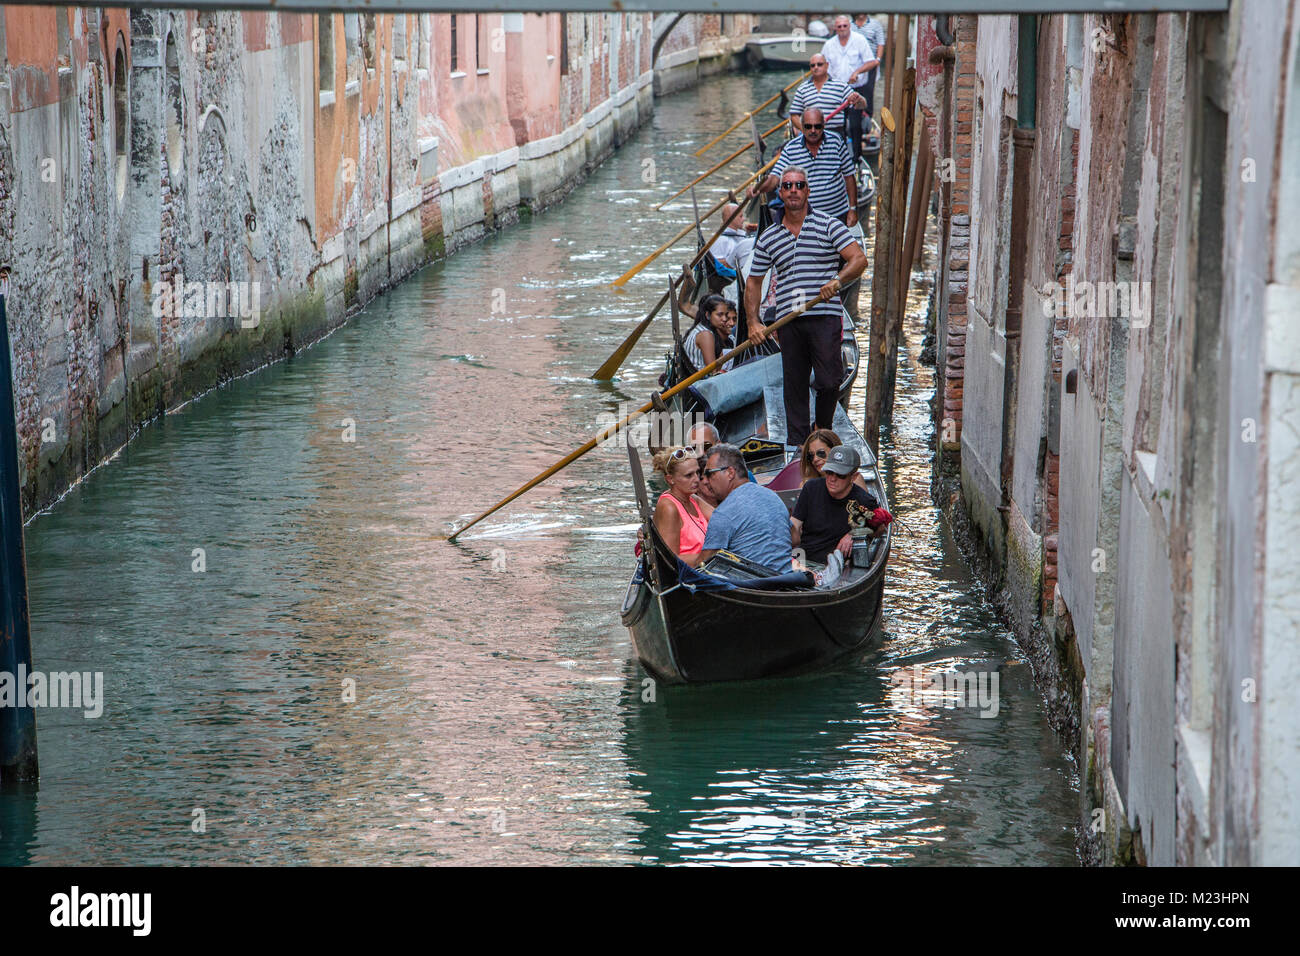 Gondole in canali di Venezia, Italia Foto Stock